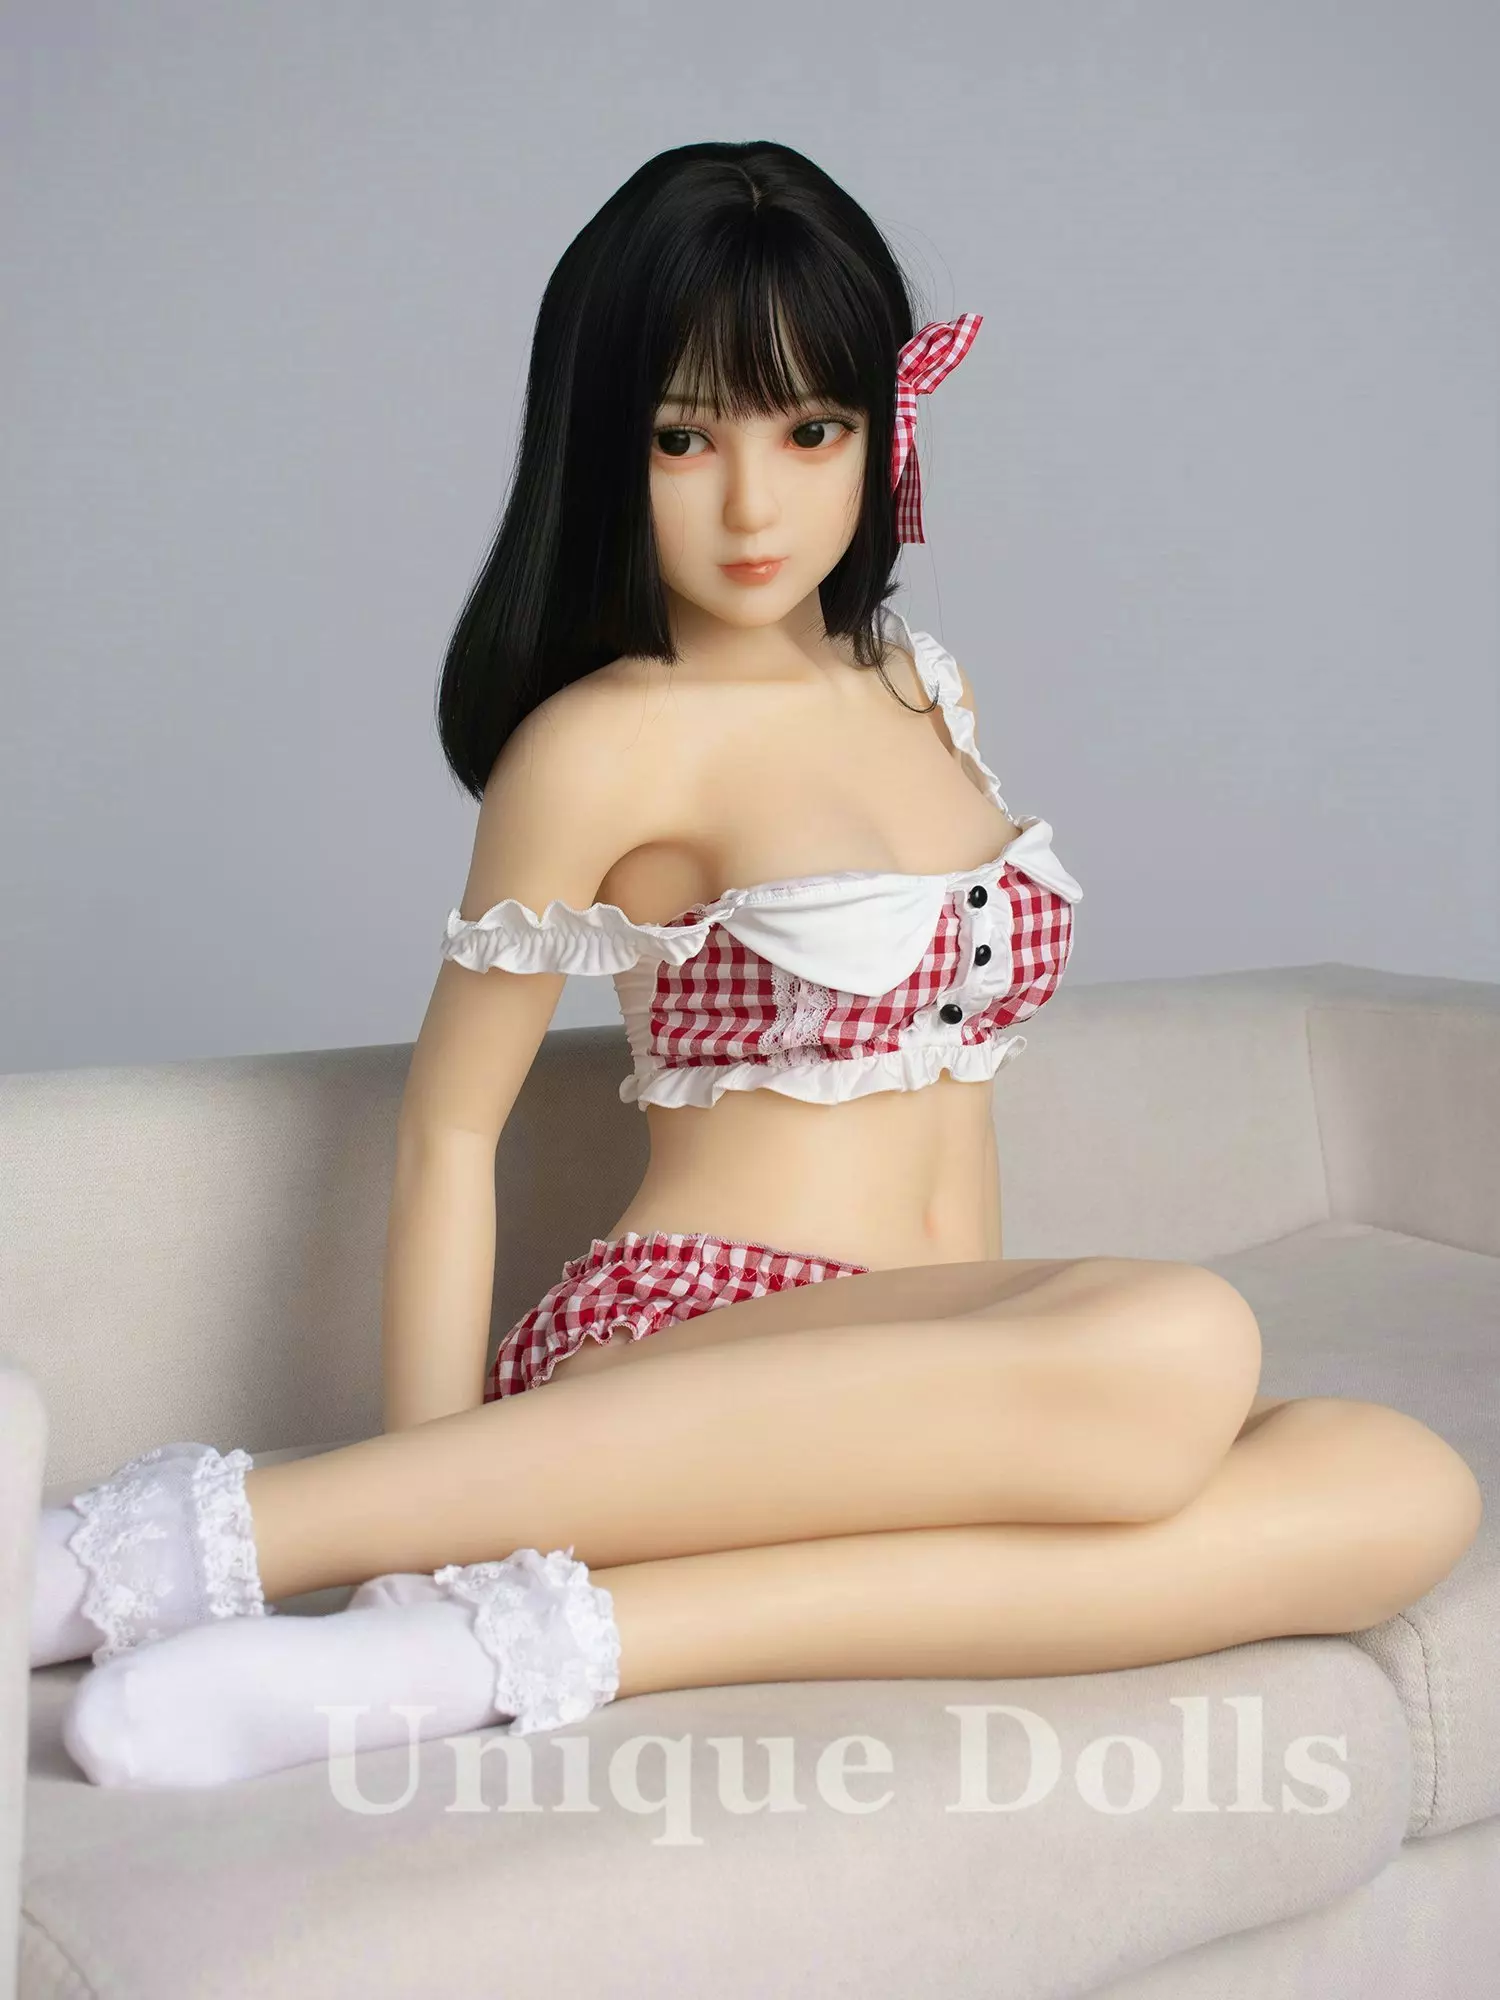 AXB-140cm Judy Cute Sex Doll with A81 Head